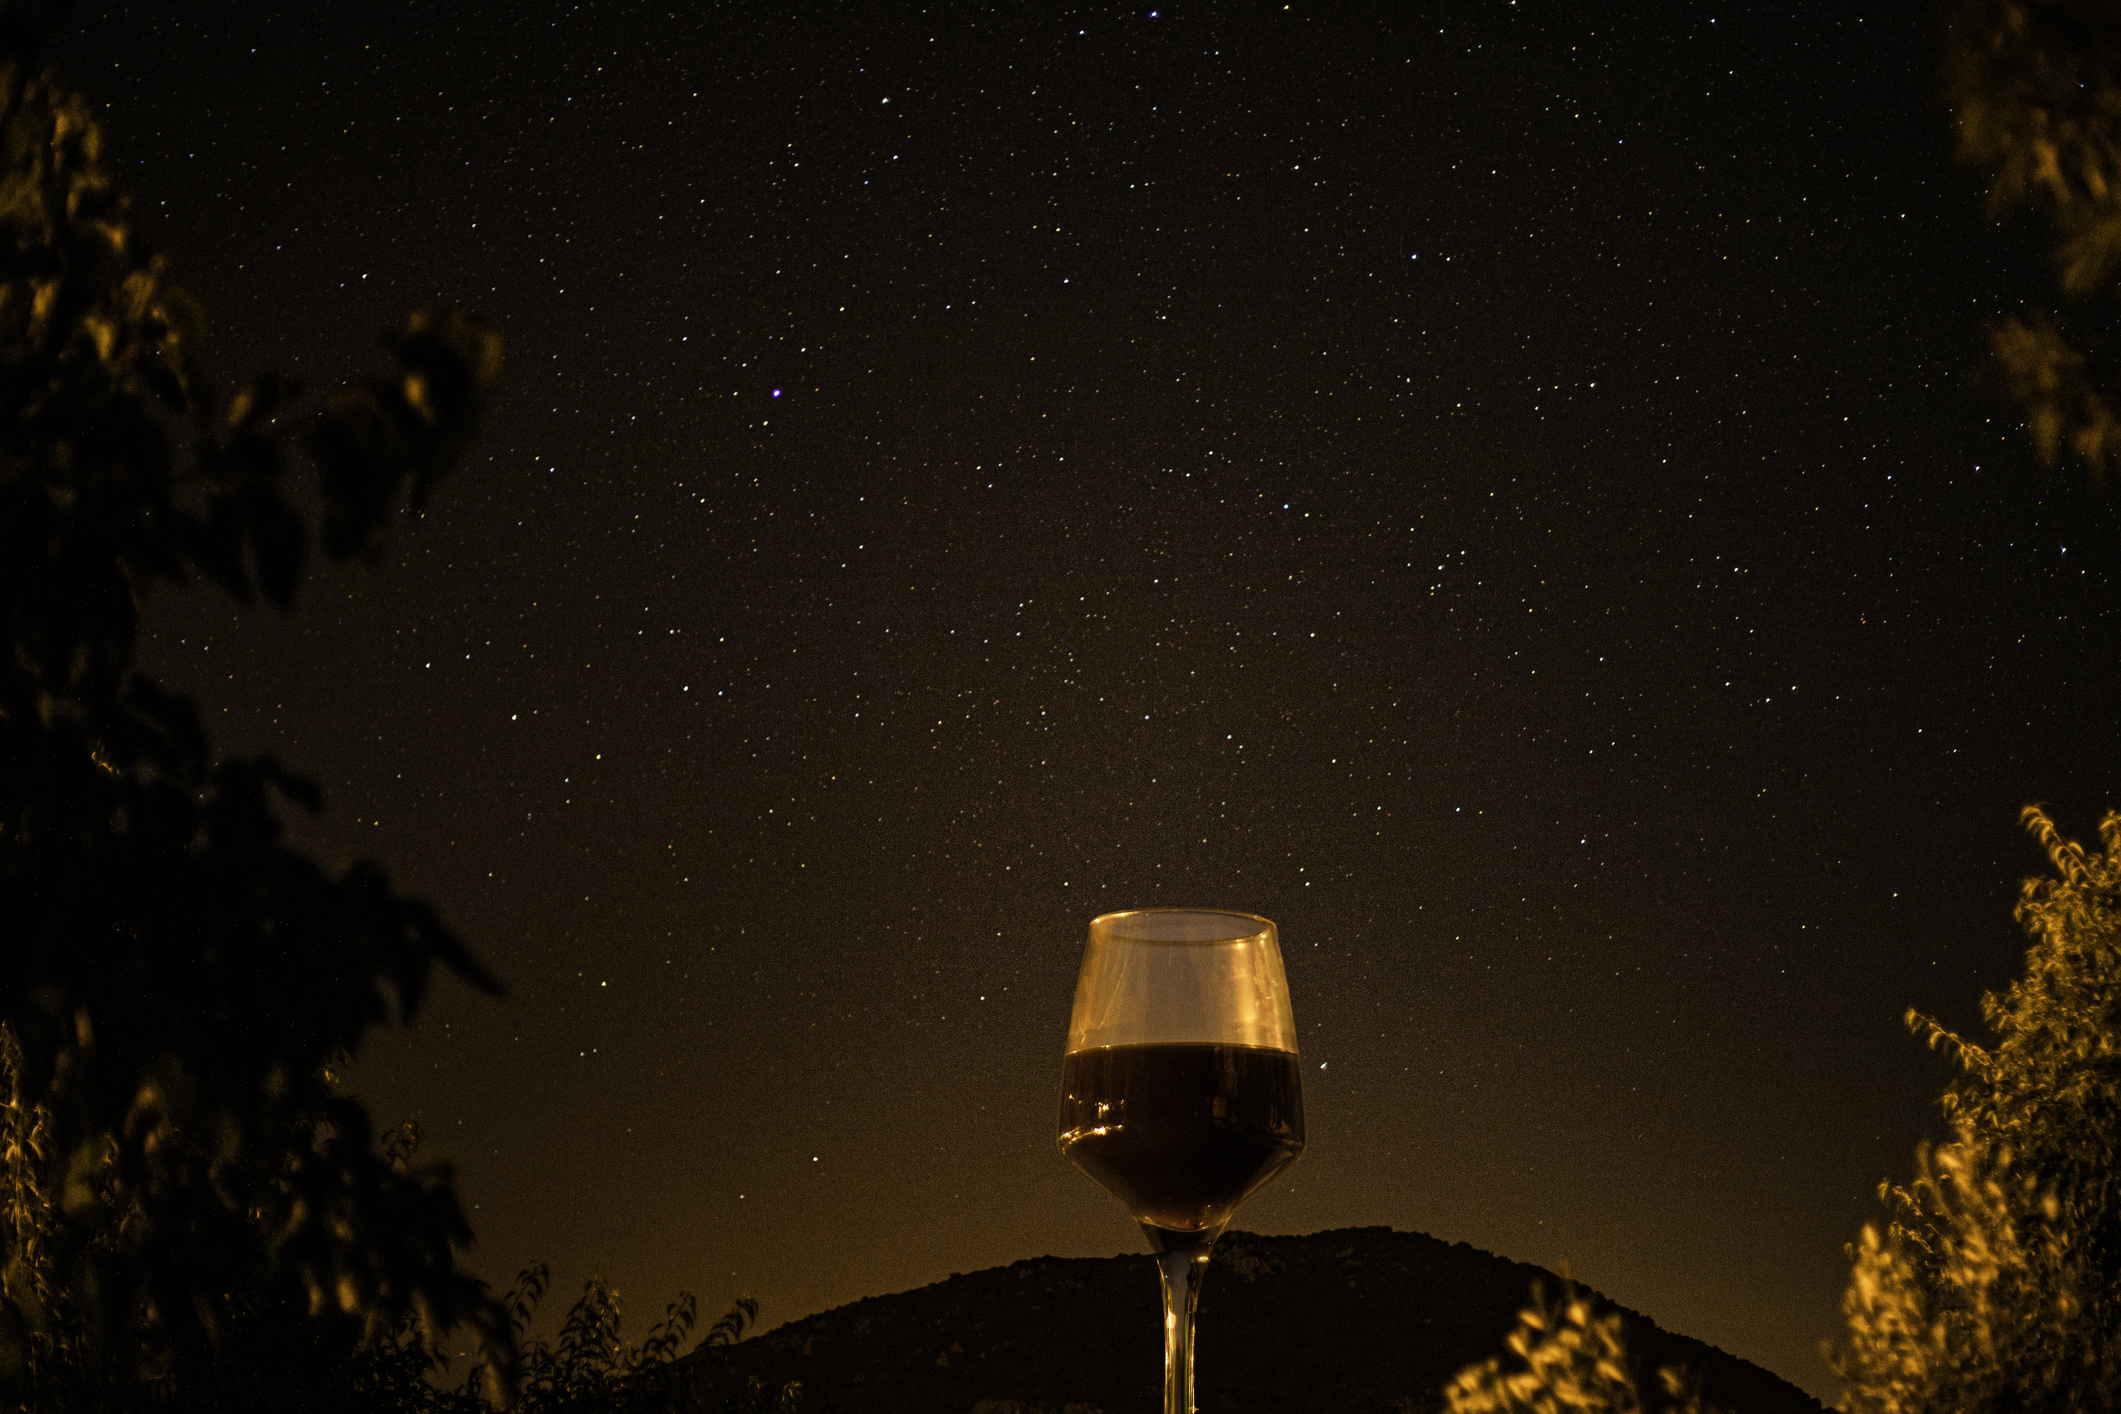 Tast de vins sota les estrelles